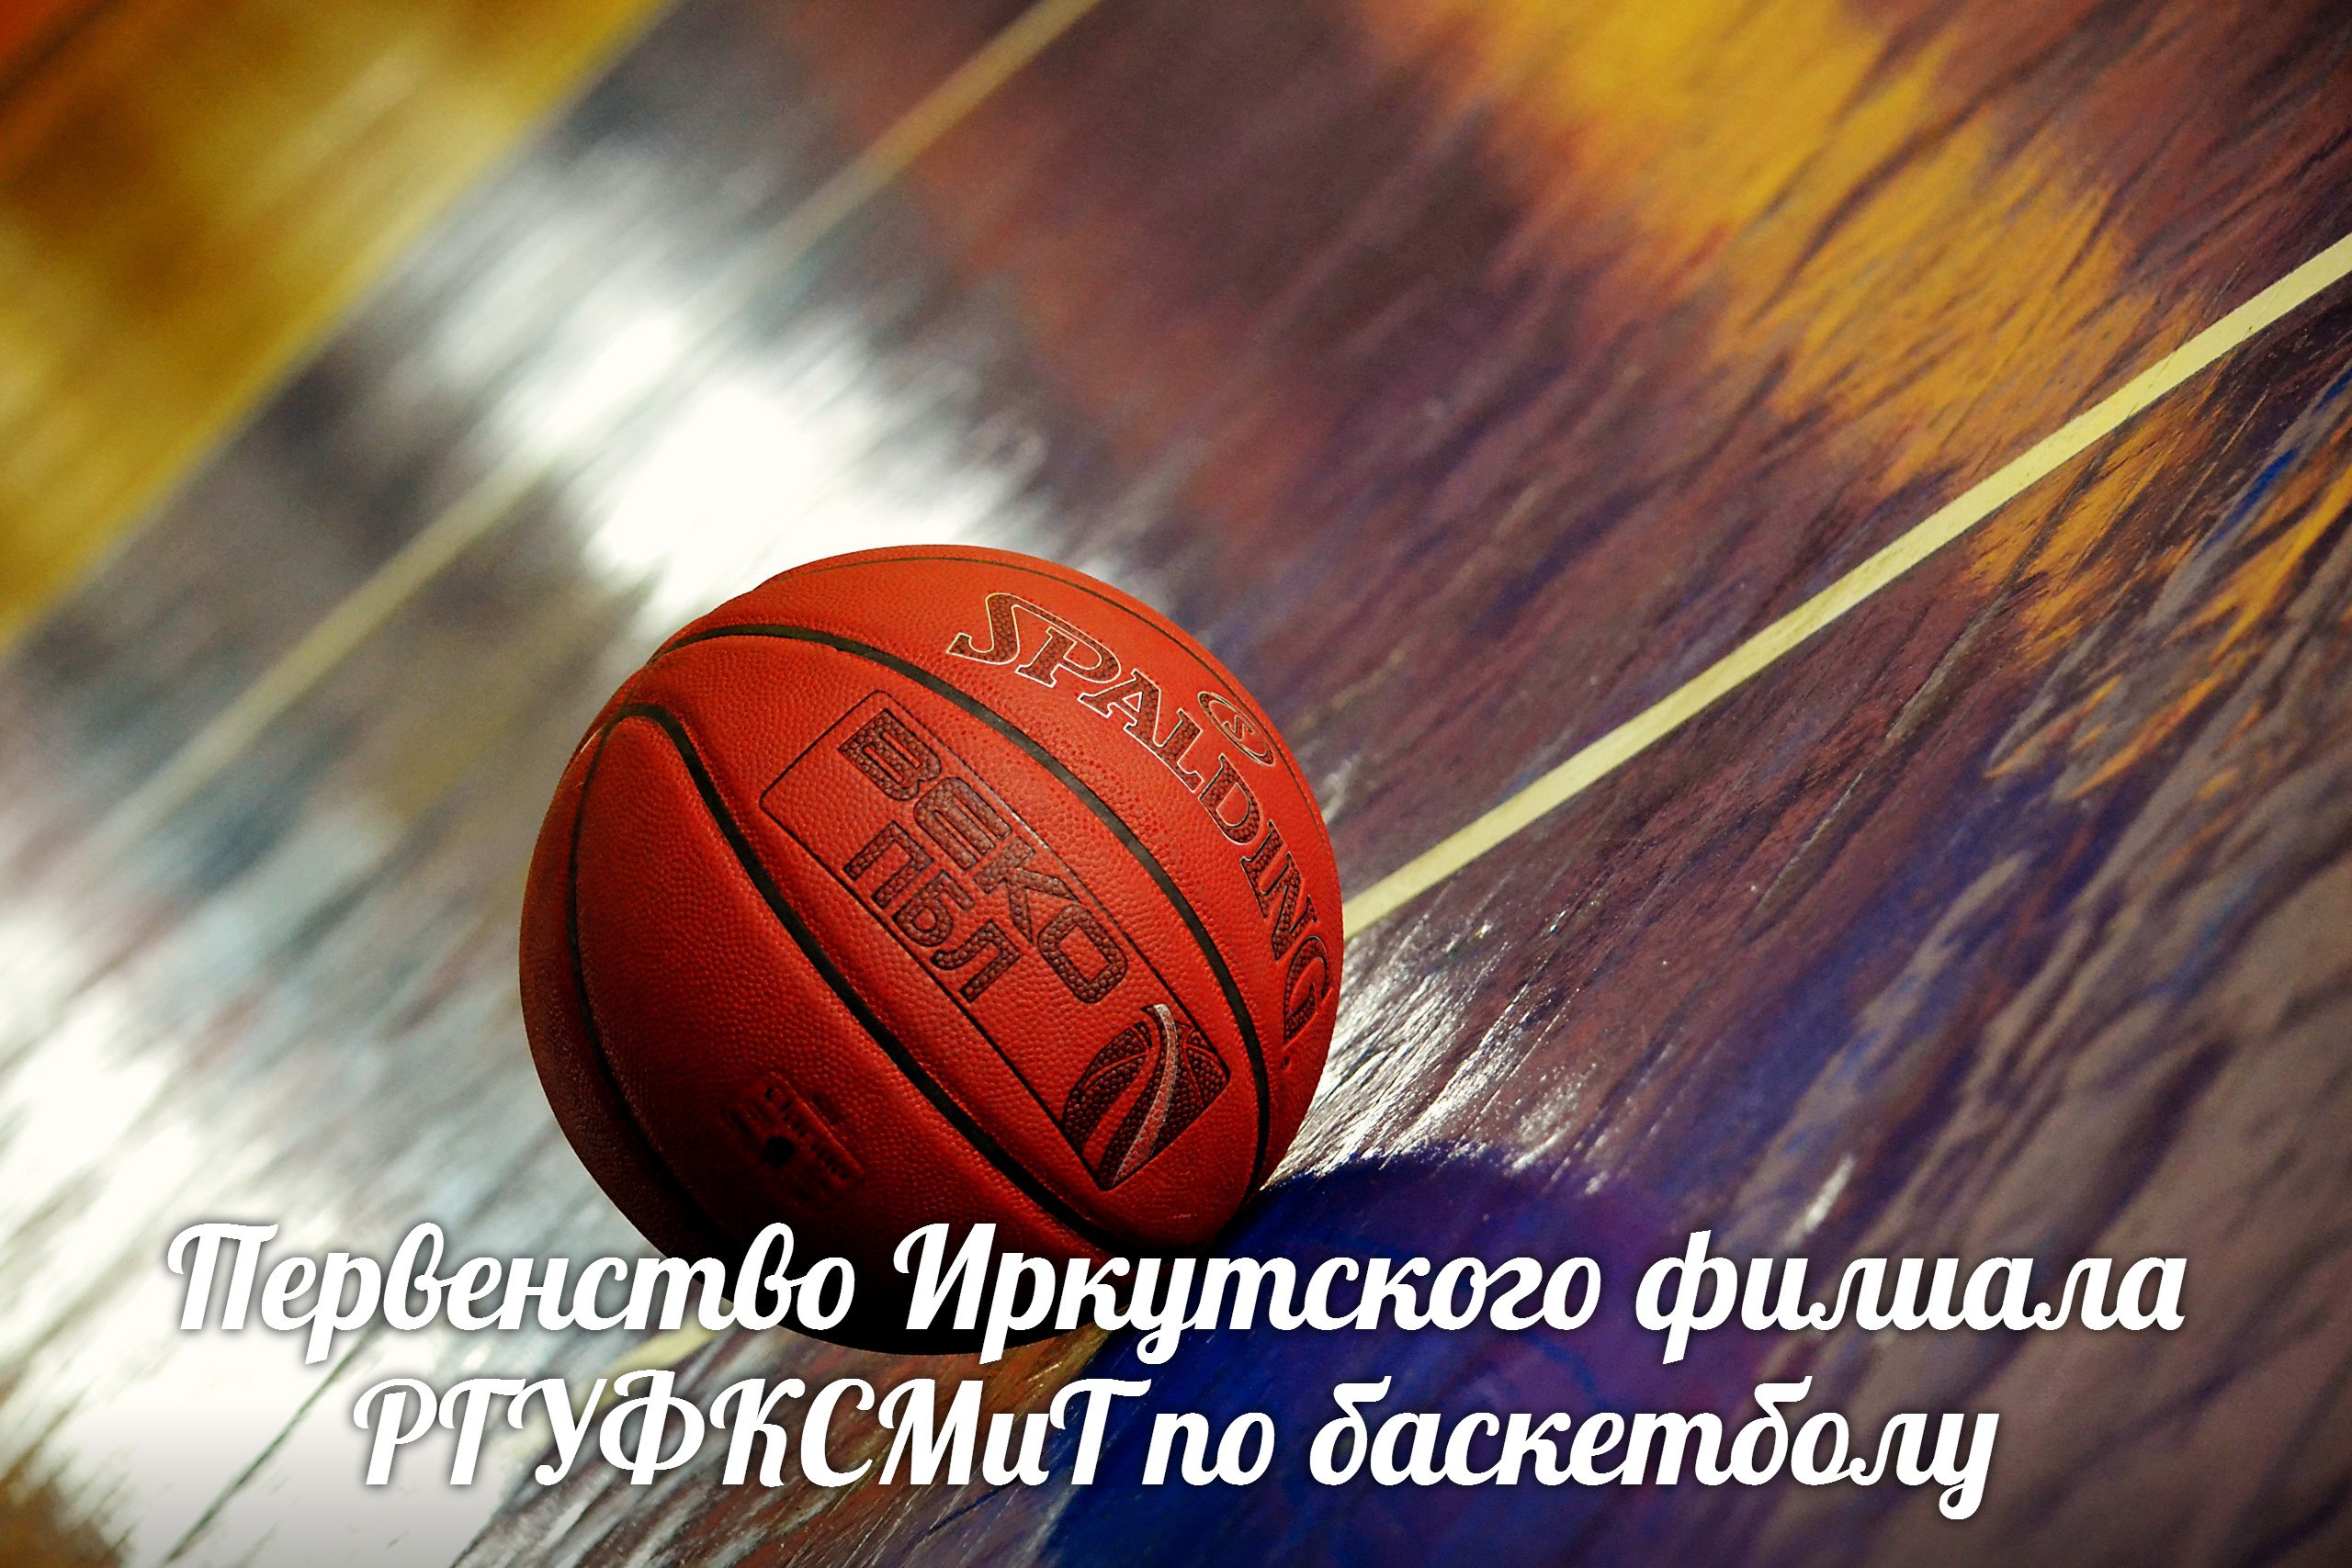 20 марта 2017 г. Первенство Иркутского филиала РГУФКСМиТ по баскетболу